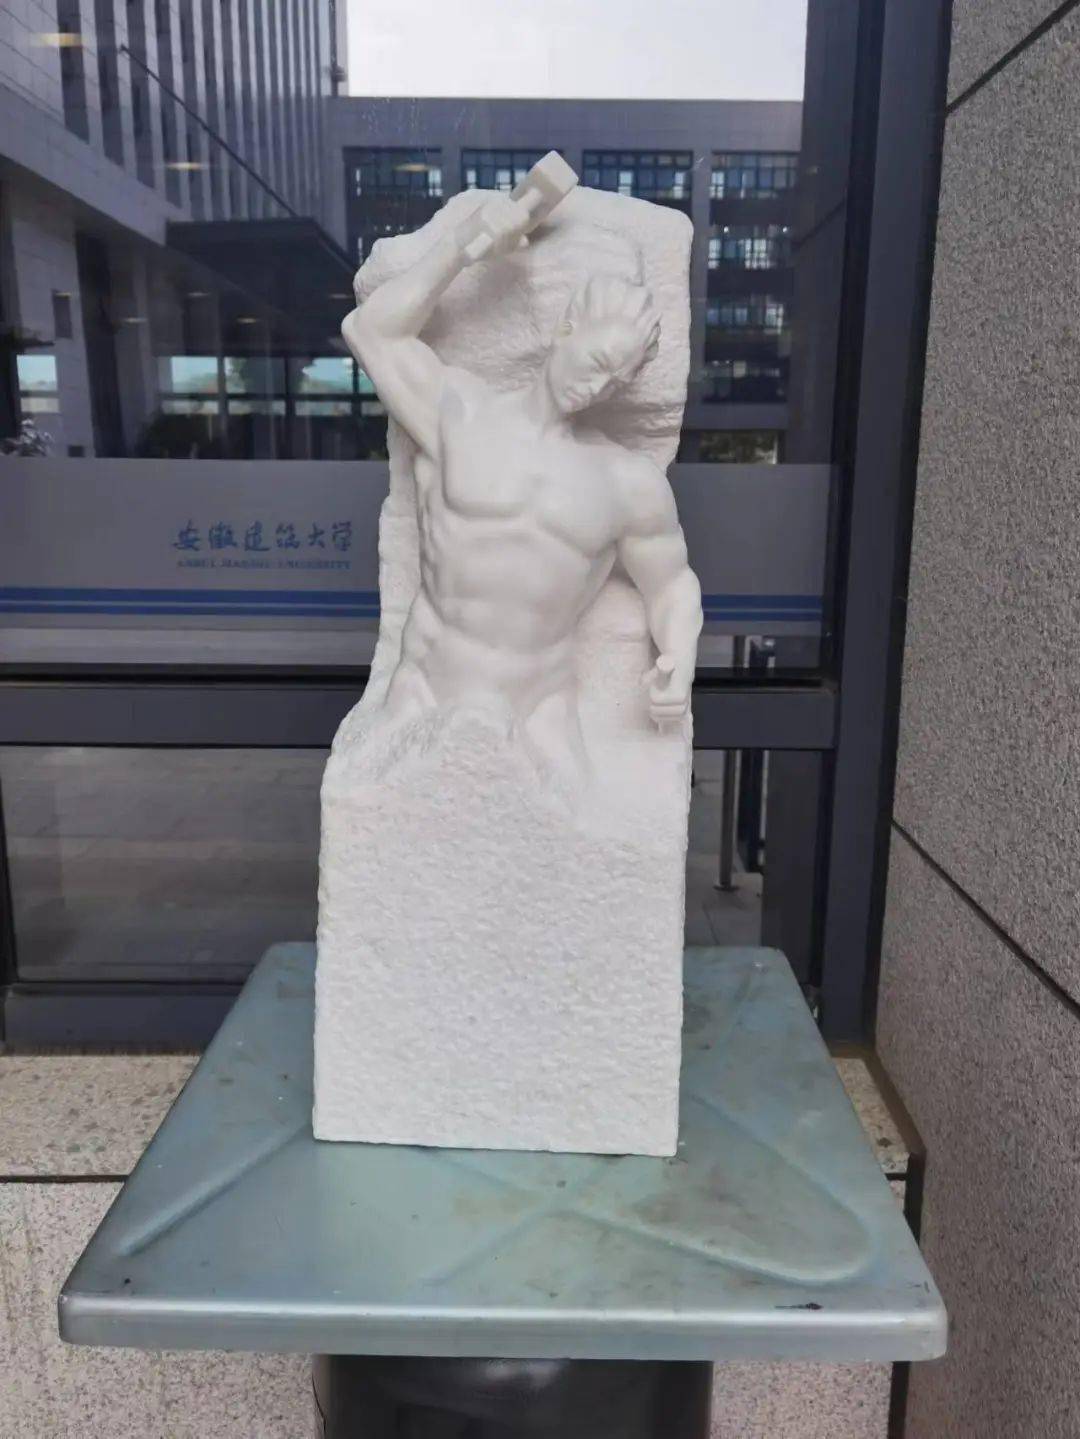 刘开渠纪念馆馆长刘开辉创作的雕塑作品《蜕变》被安徽建筑大学永久